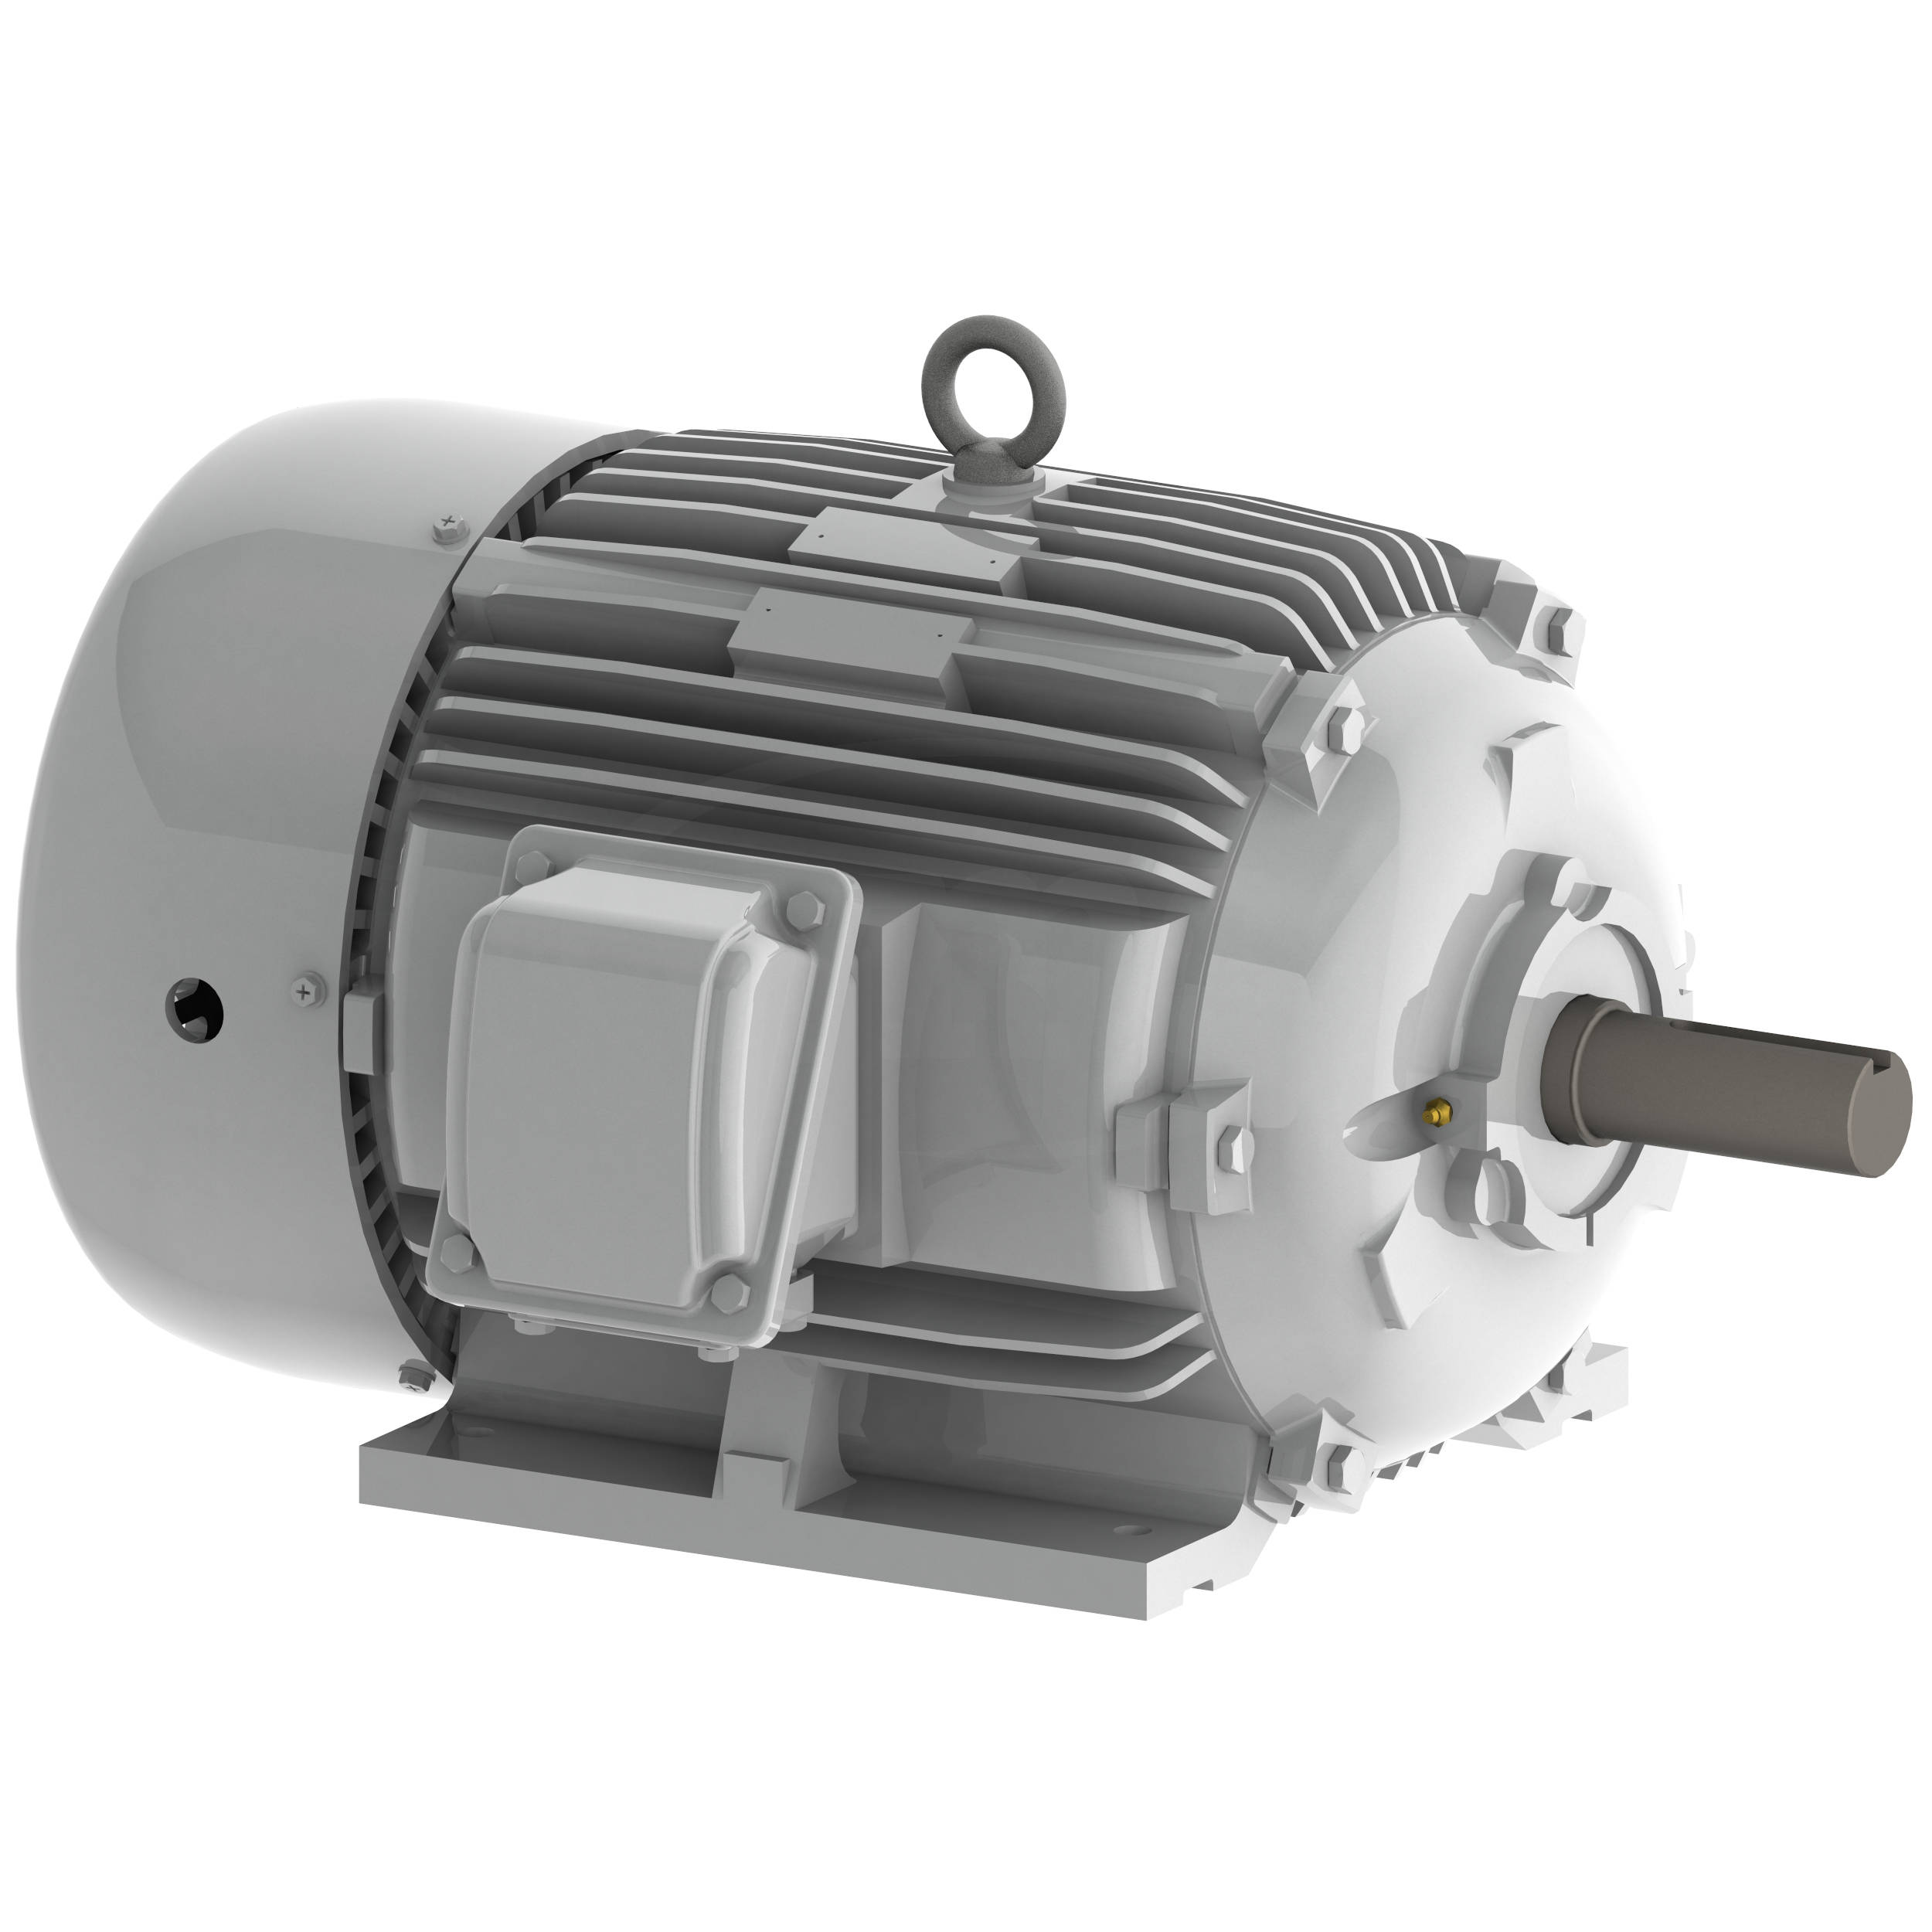 Ilustrar evaporación Incorrecto EP0158 Teco-Westinghouse 15 HP Cast Iron Electric Motor, 900 RPM